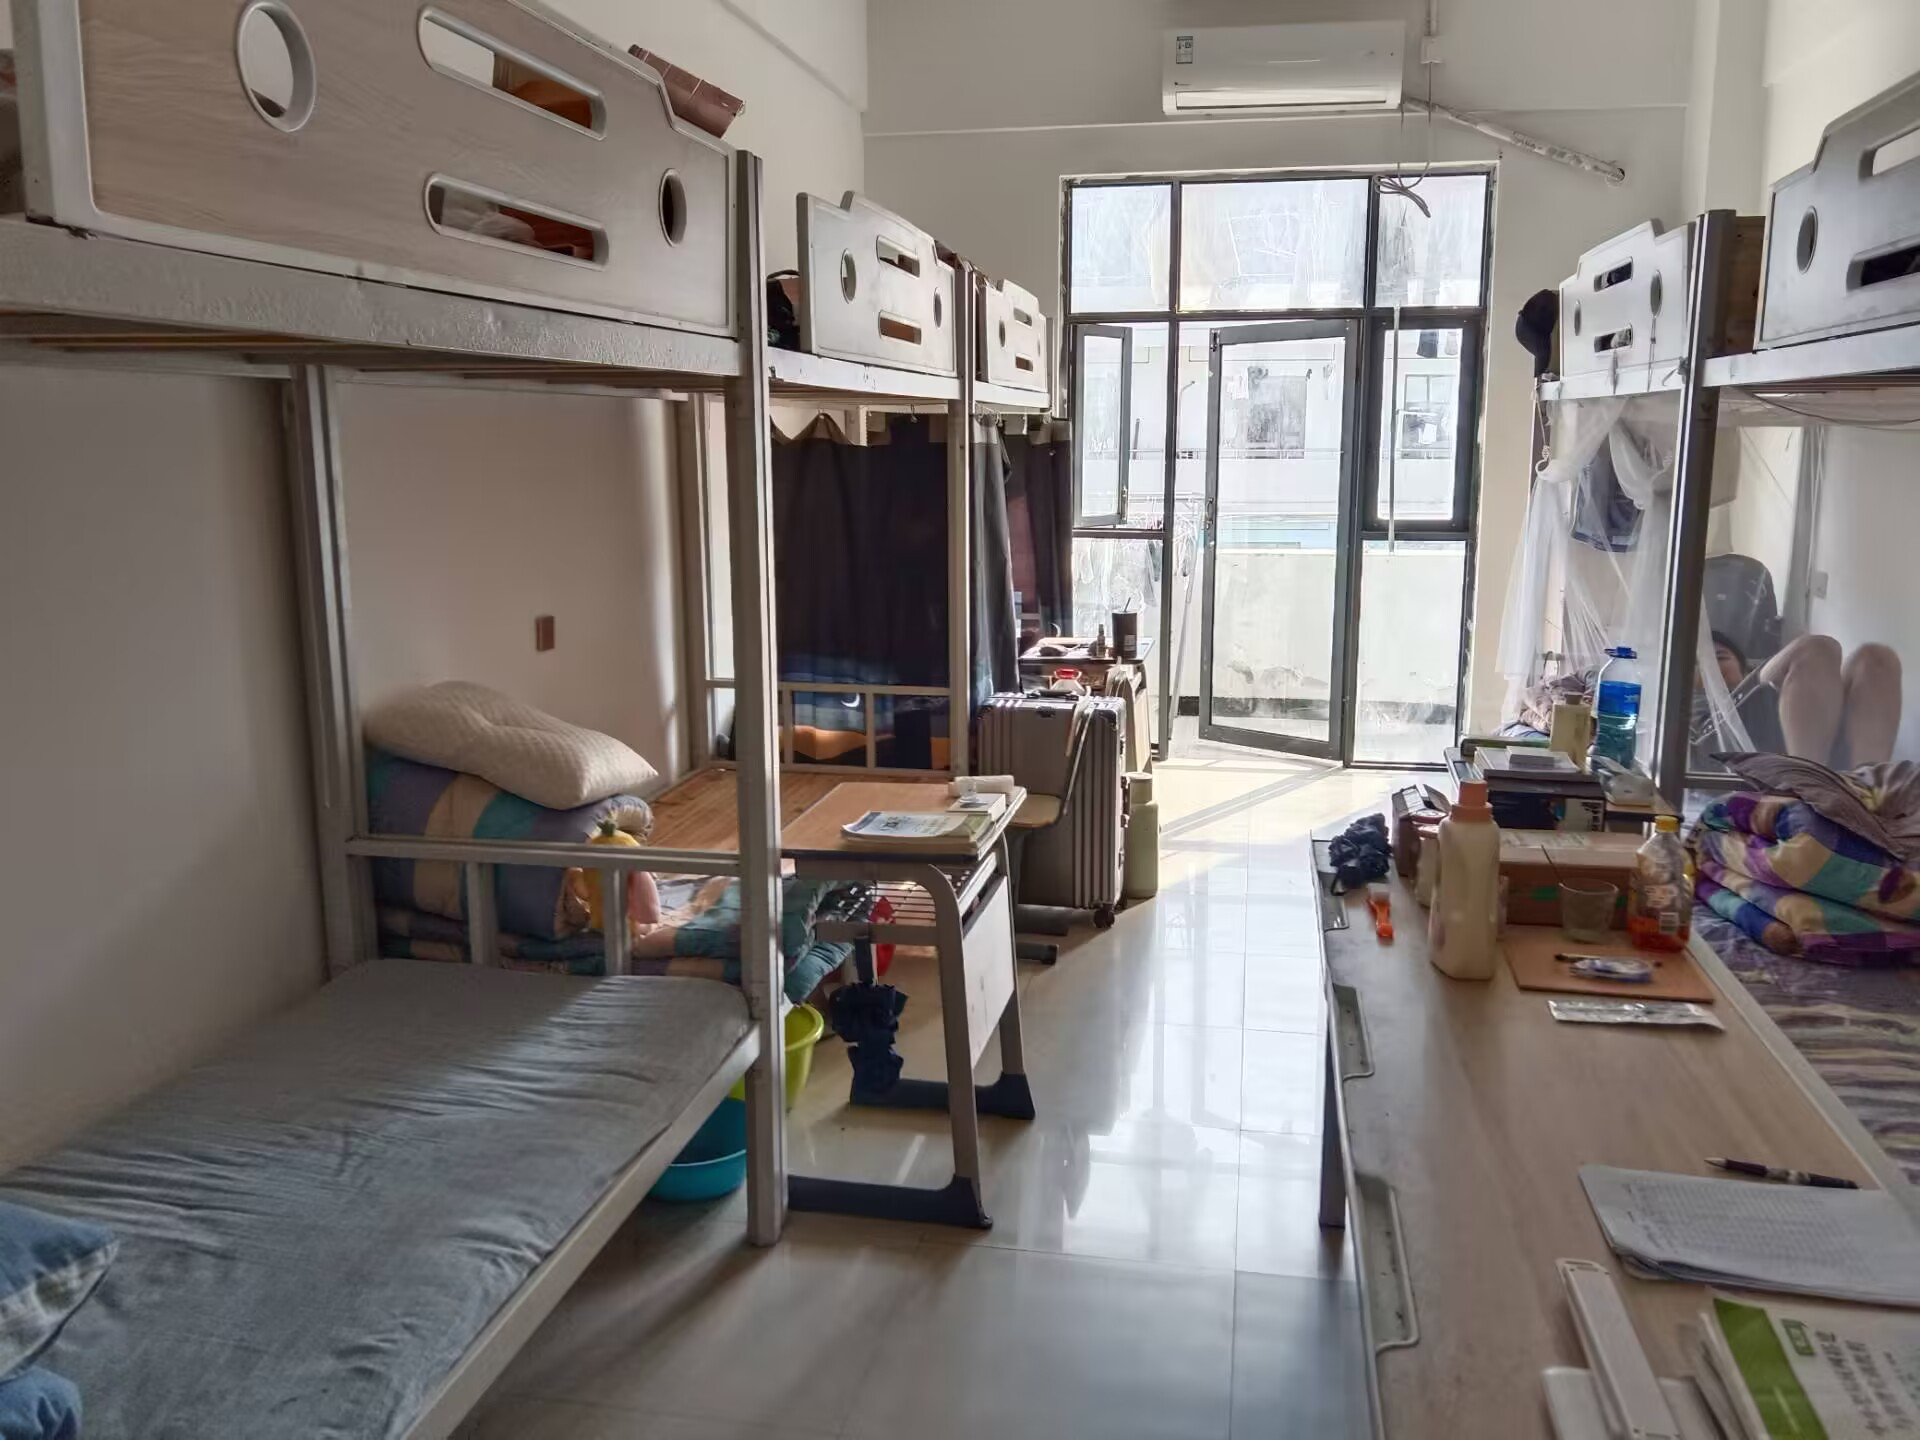 snh48宿舍分配图寝室图片